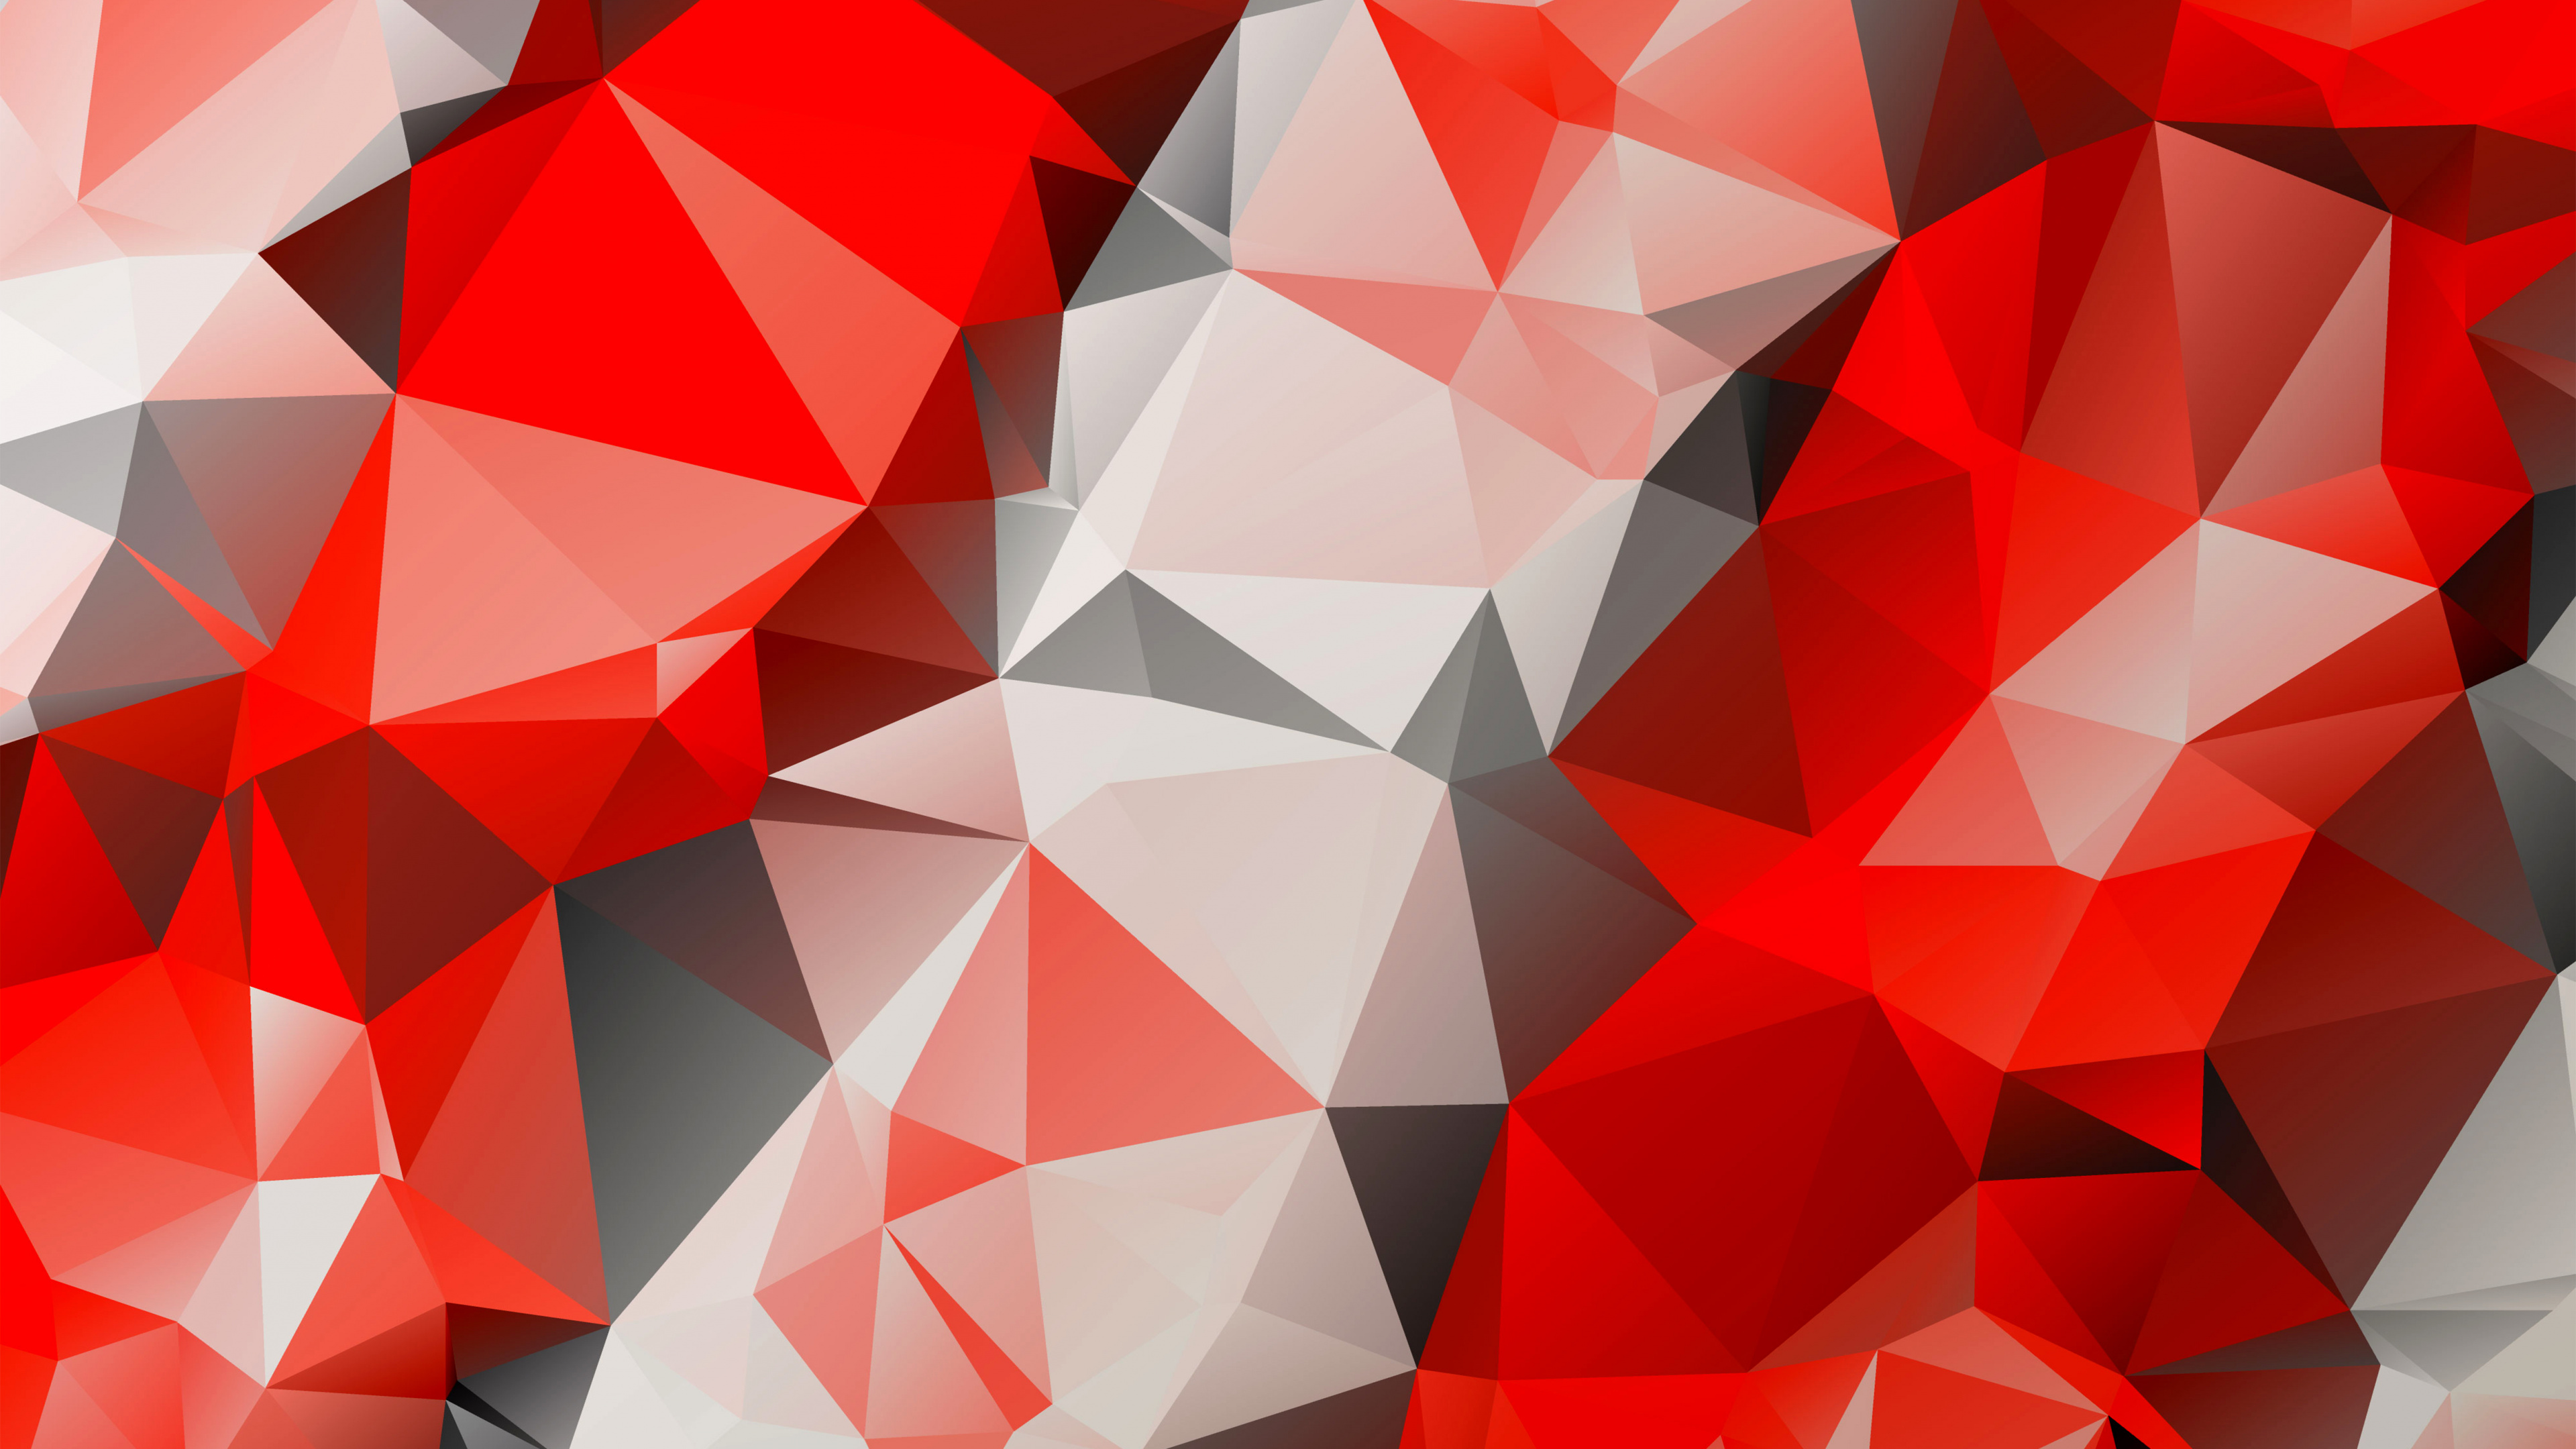 多边形, 红色的, 三角形, 对称, 矢量图形 壁纸 3840x2160 允许